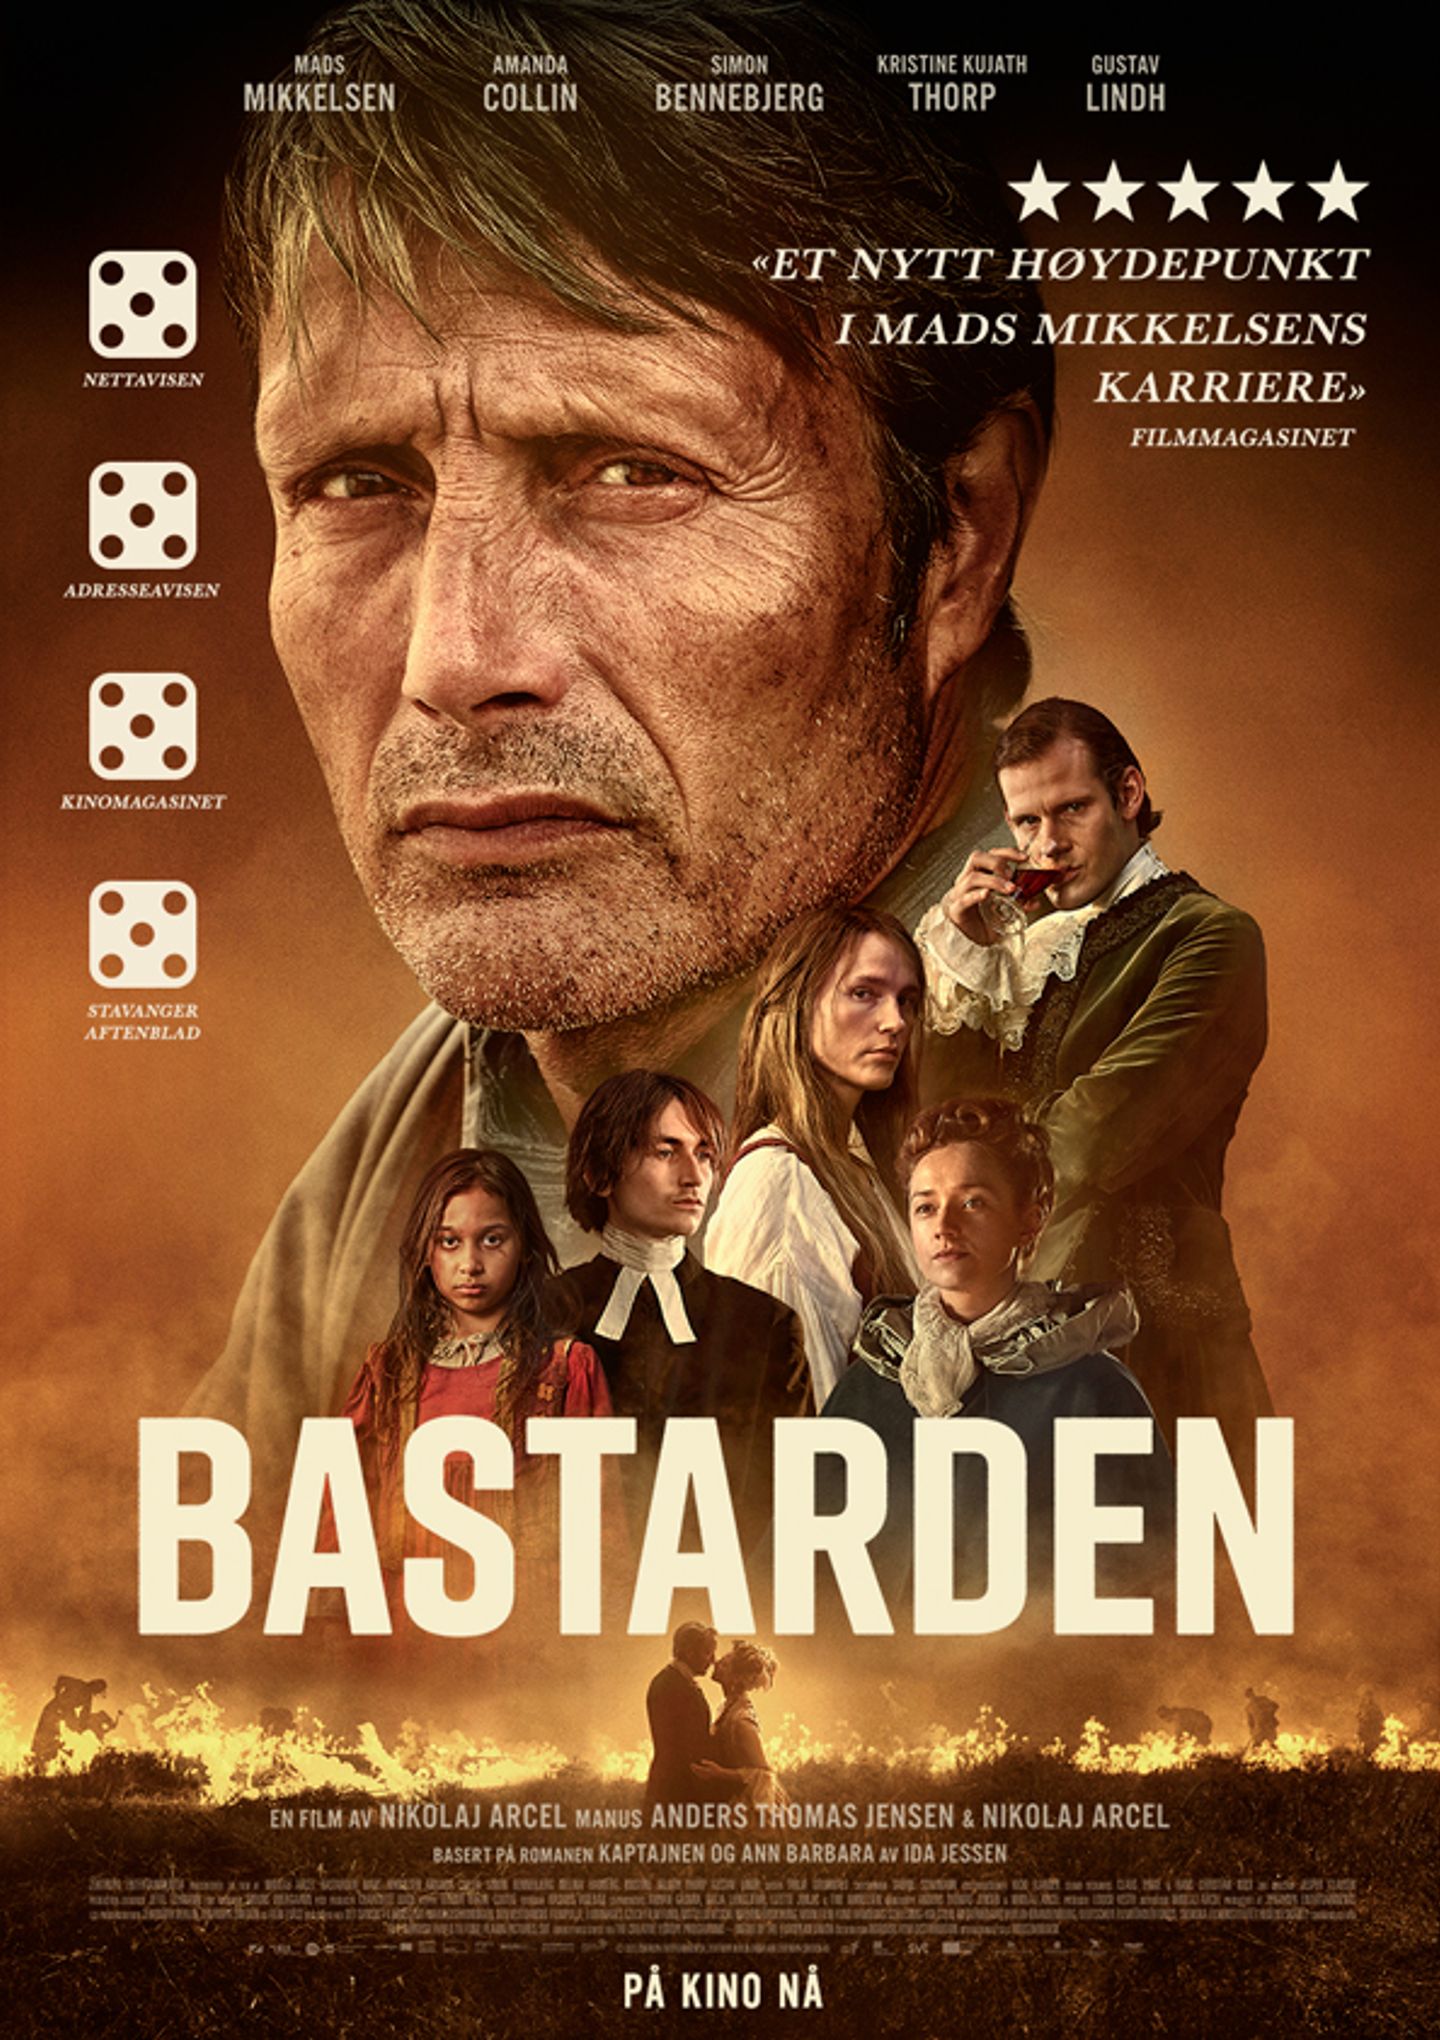 Plakat for 'Bastarden'